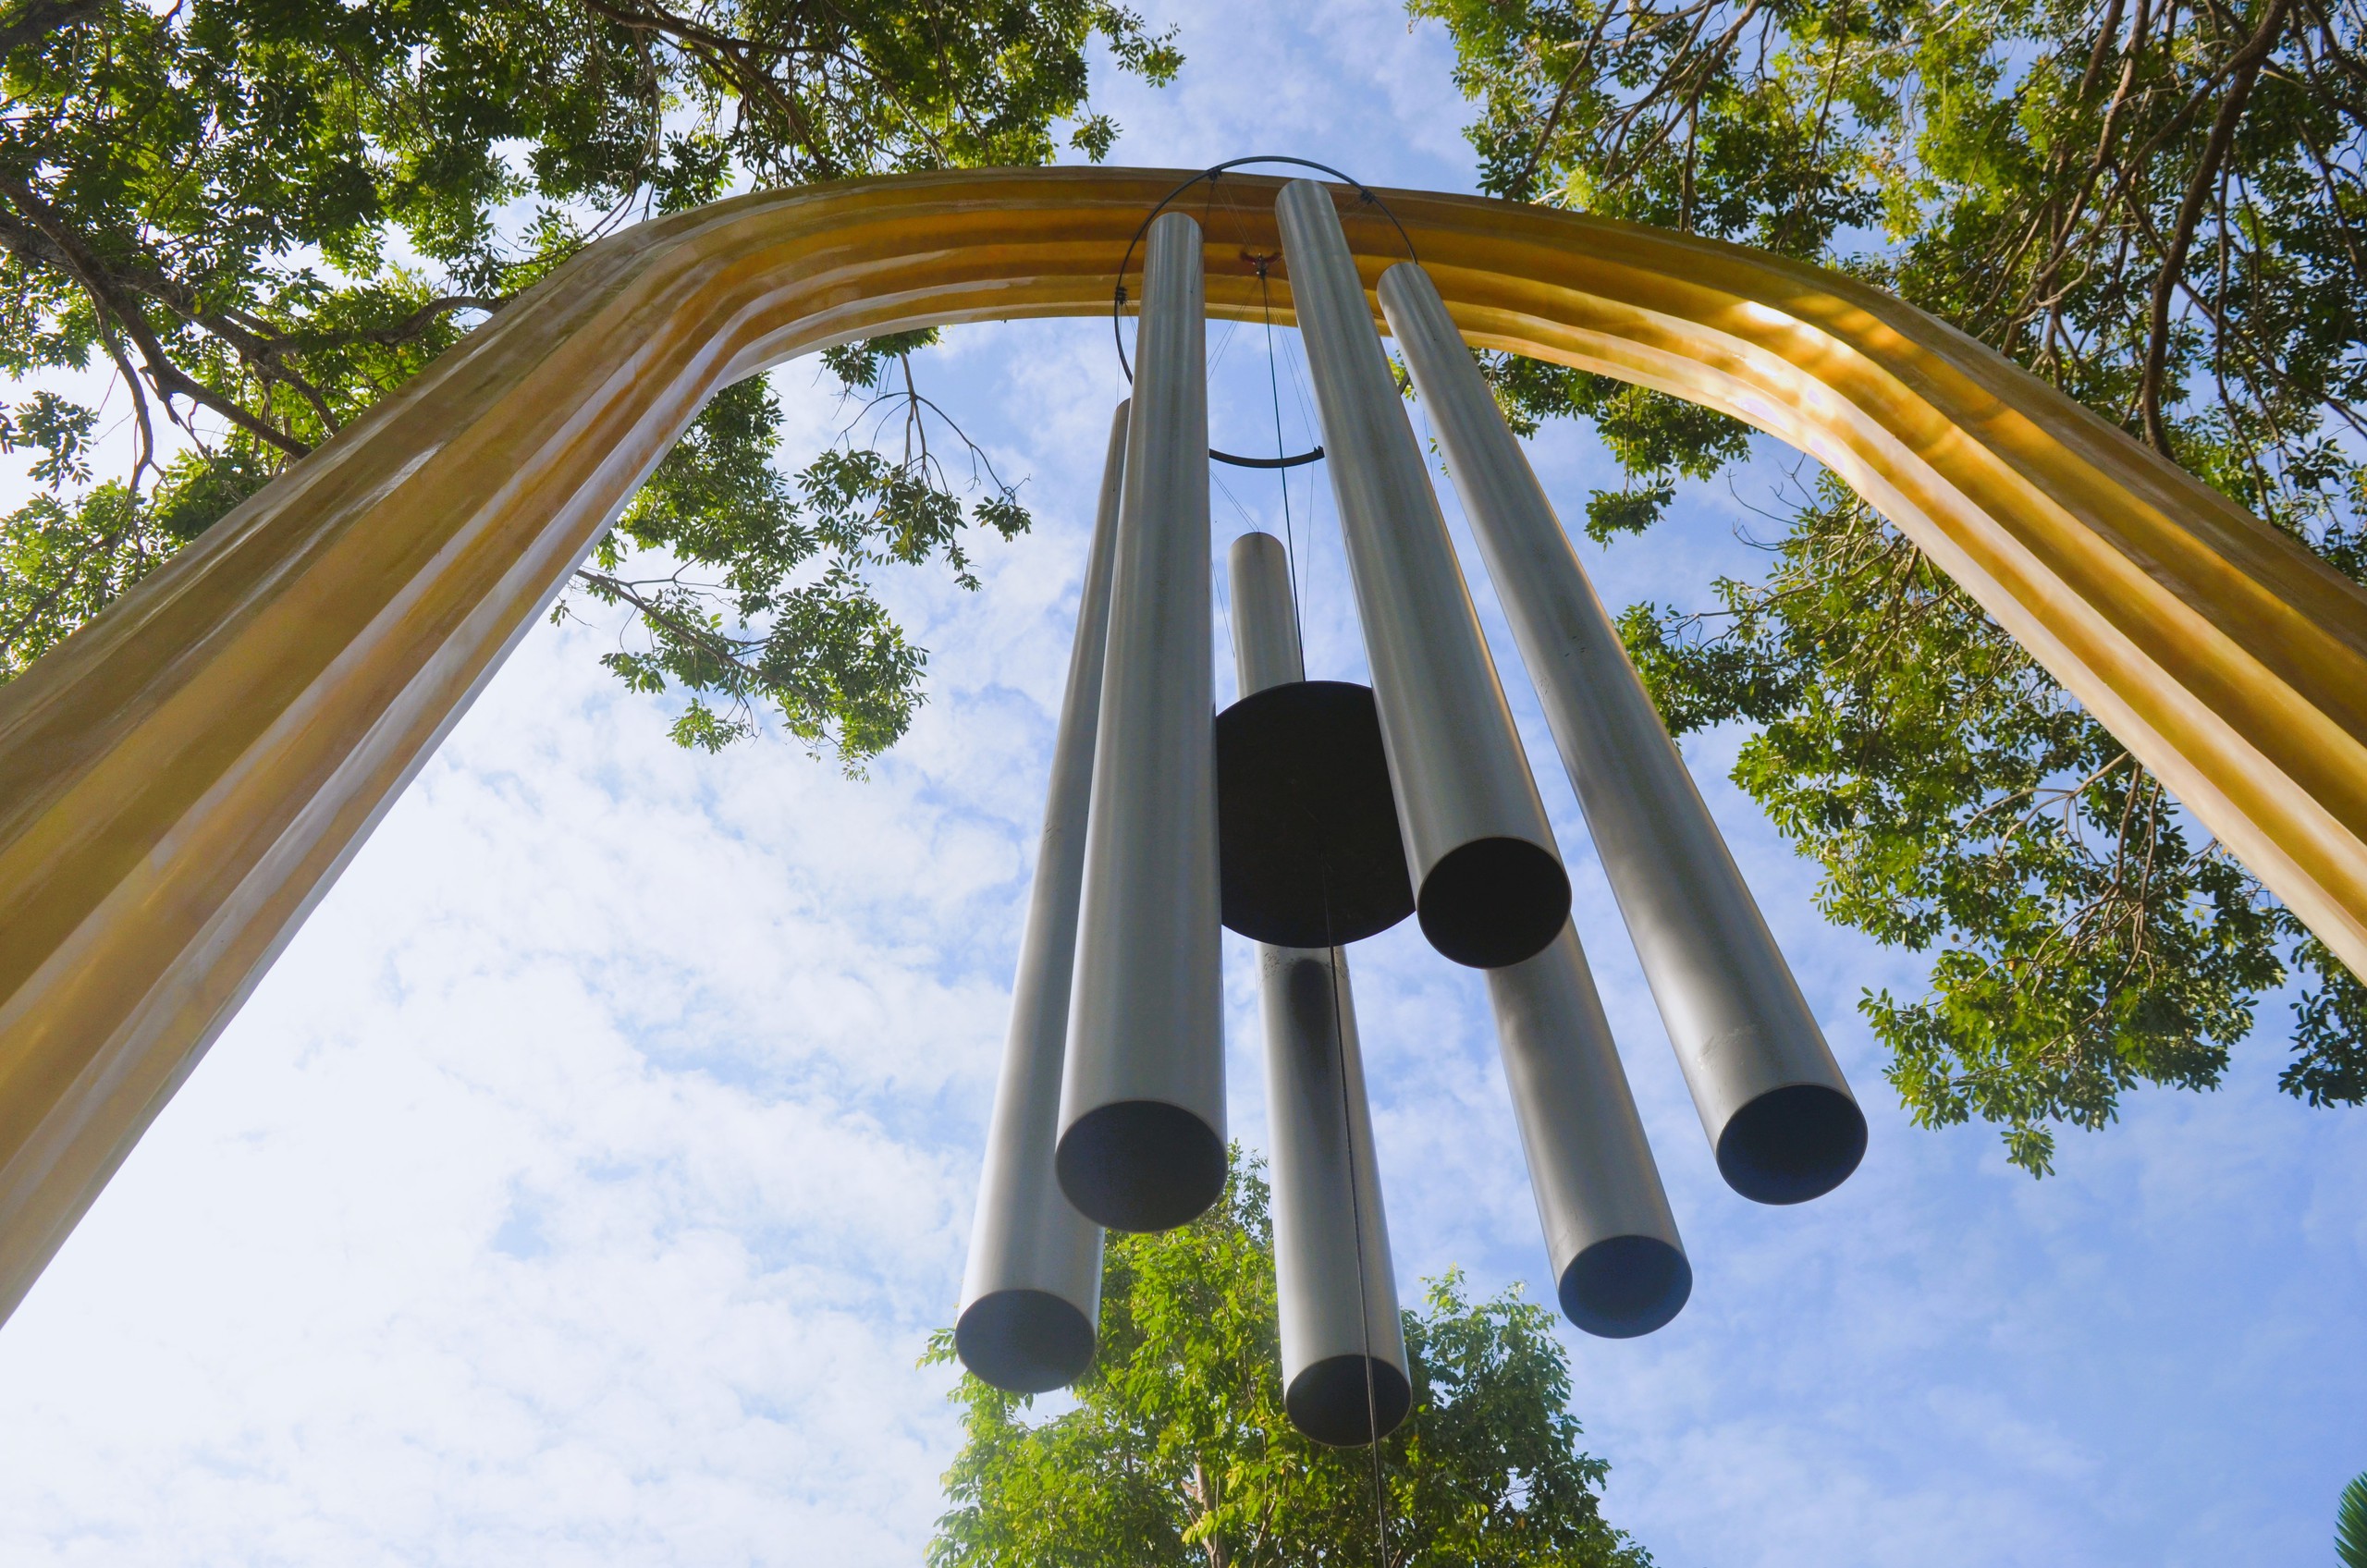 Tháp chuông gió Tà Cú với 6 ống chuông khổng lồ kết hợp với những chuông gió nhỏ chung quanh tạo nên bản hòa âm của sự 